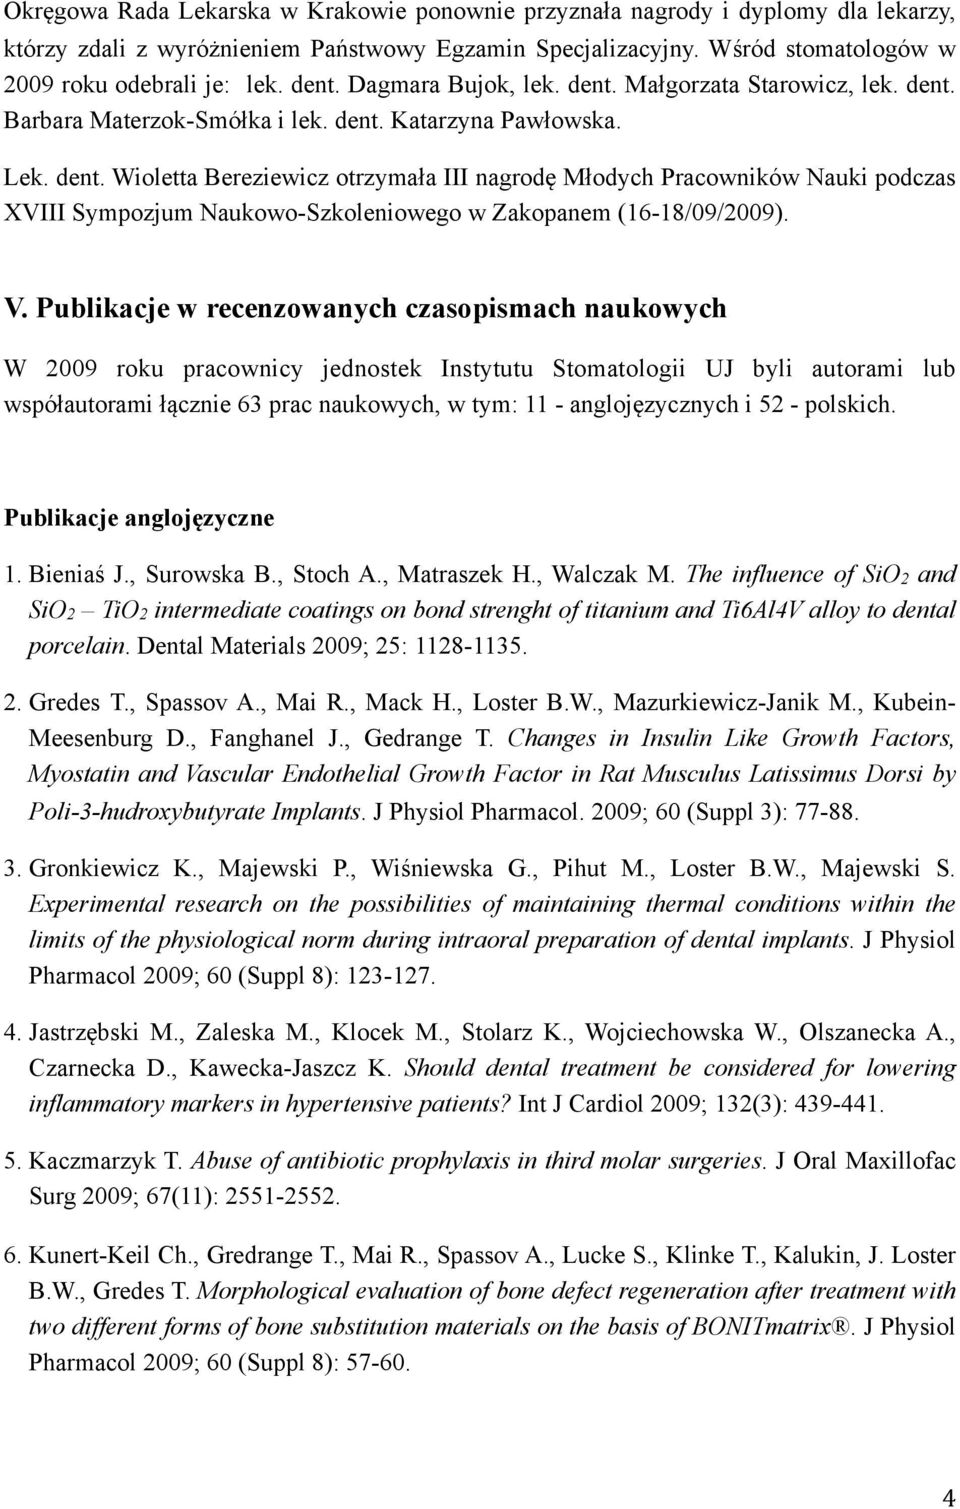 V. Publikacje w recenzowanych czasopismach naukowych W 2009 roku pracownicy jednostek Instytutu Stomatologii UJ byli autorami lub współautorami łącznie 63 prac naukowych, w tym: 11 - anglojęzycznych